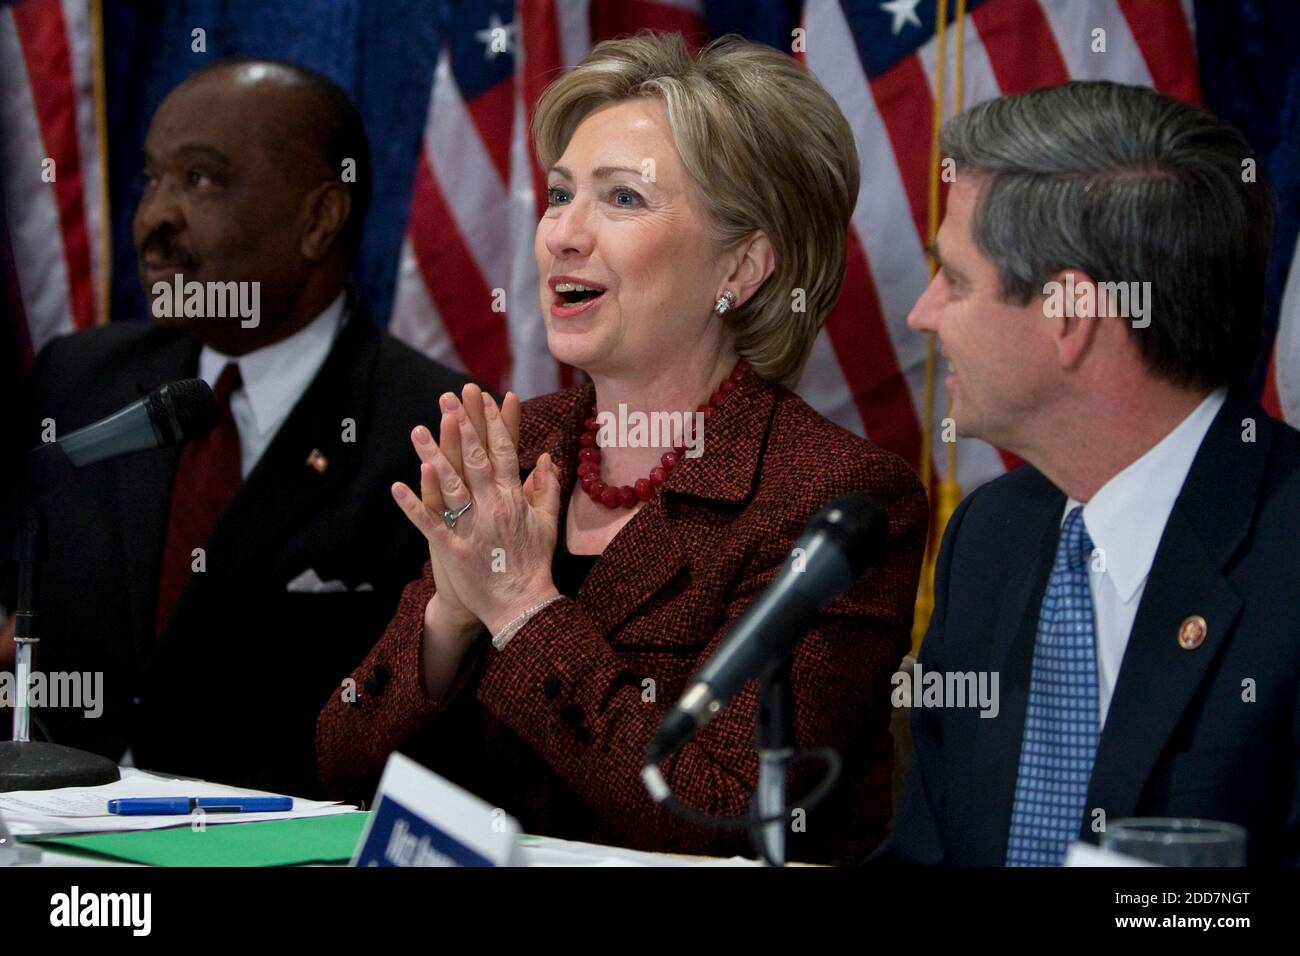 Die demokratische Präsidentschaftskandidatin Hillary Clinton nimmt am 6. März 2008 an einer Pressekonferenz mit Militärs in Washington DC, USA, Teil. Foto von Chuck Kennedy/MCT/ABACAPRESS.COM Stockfoto